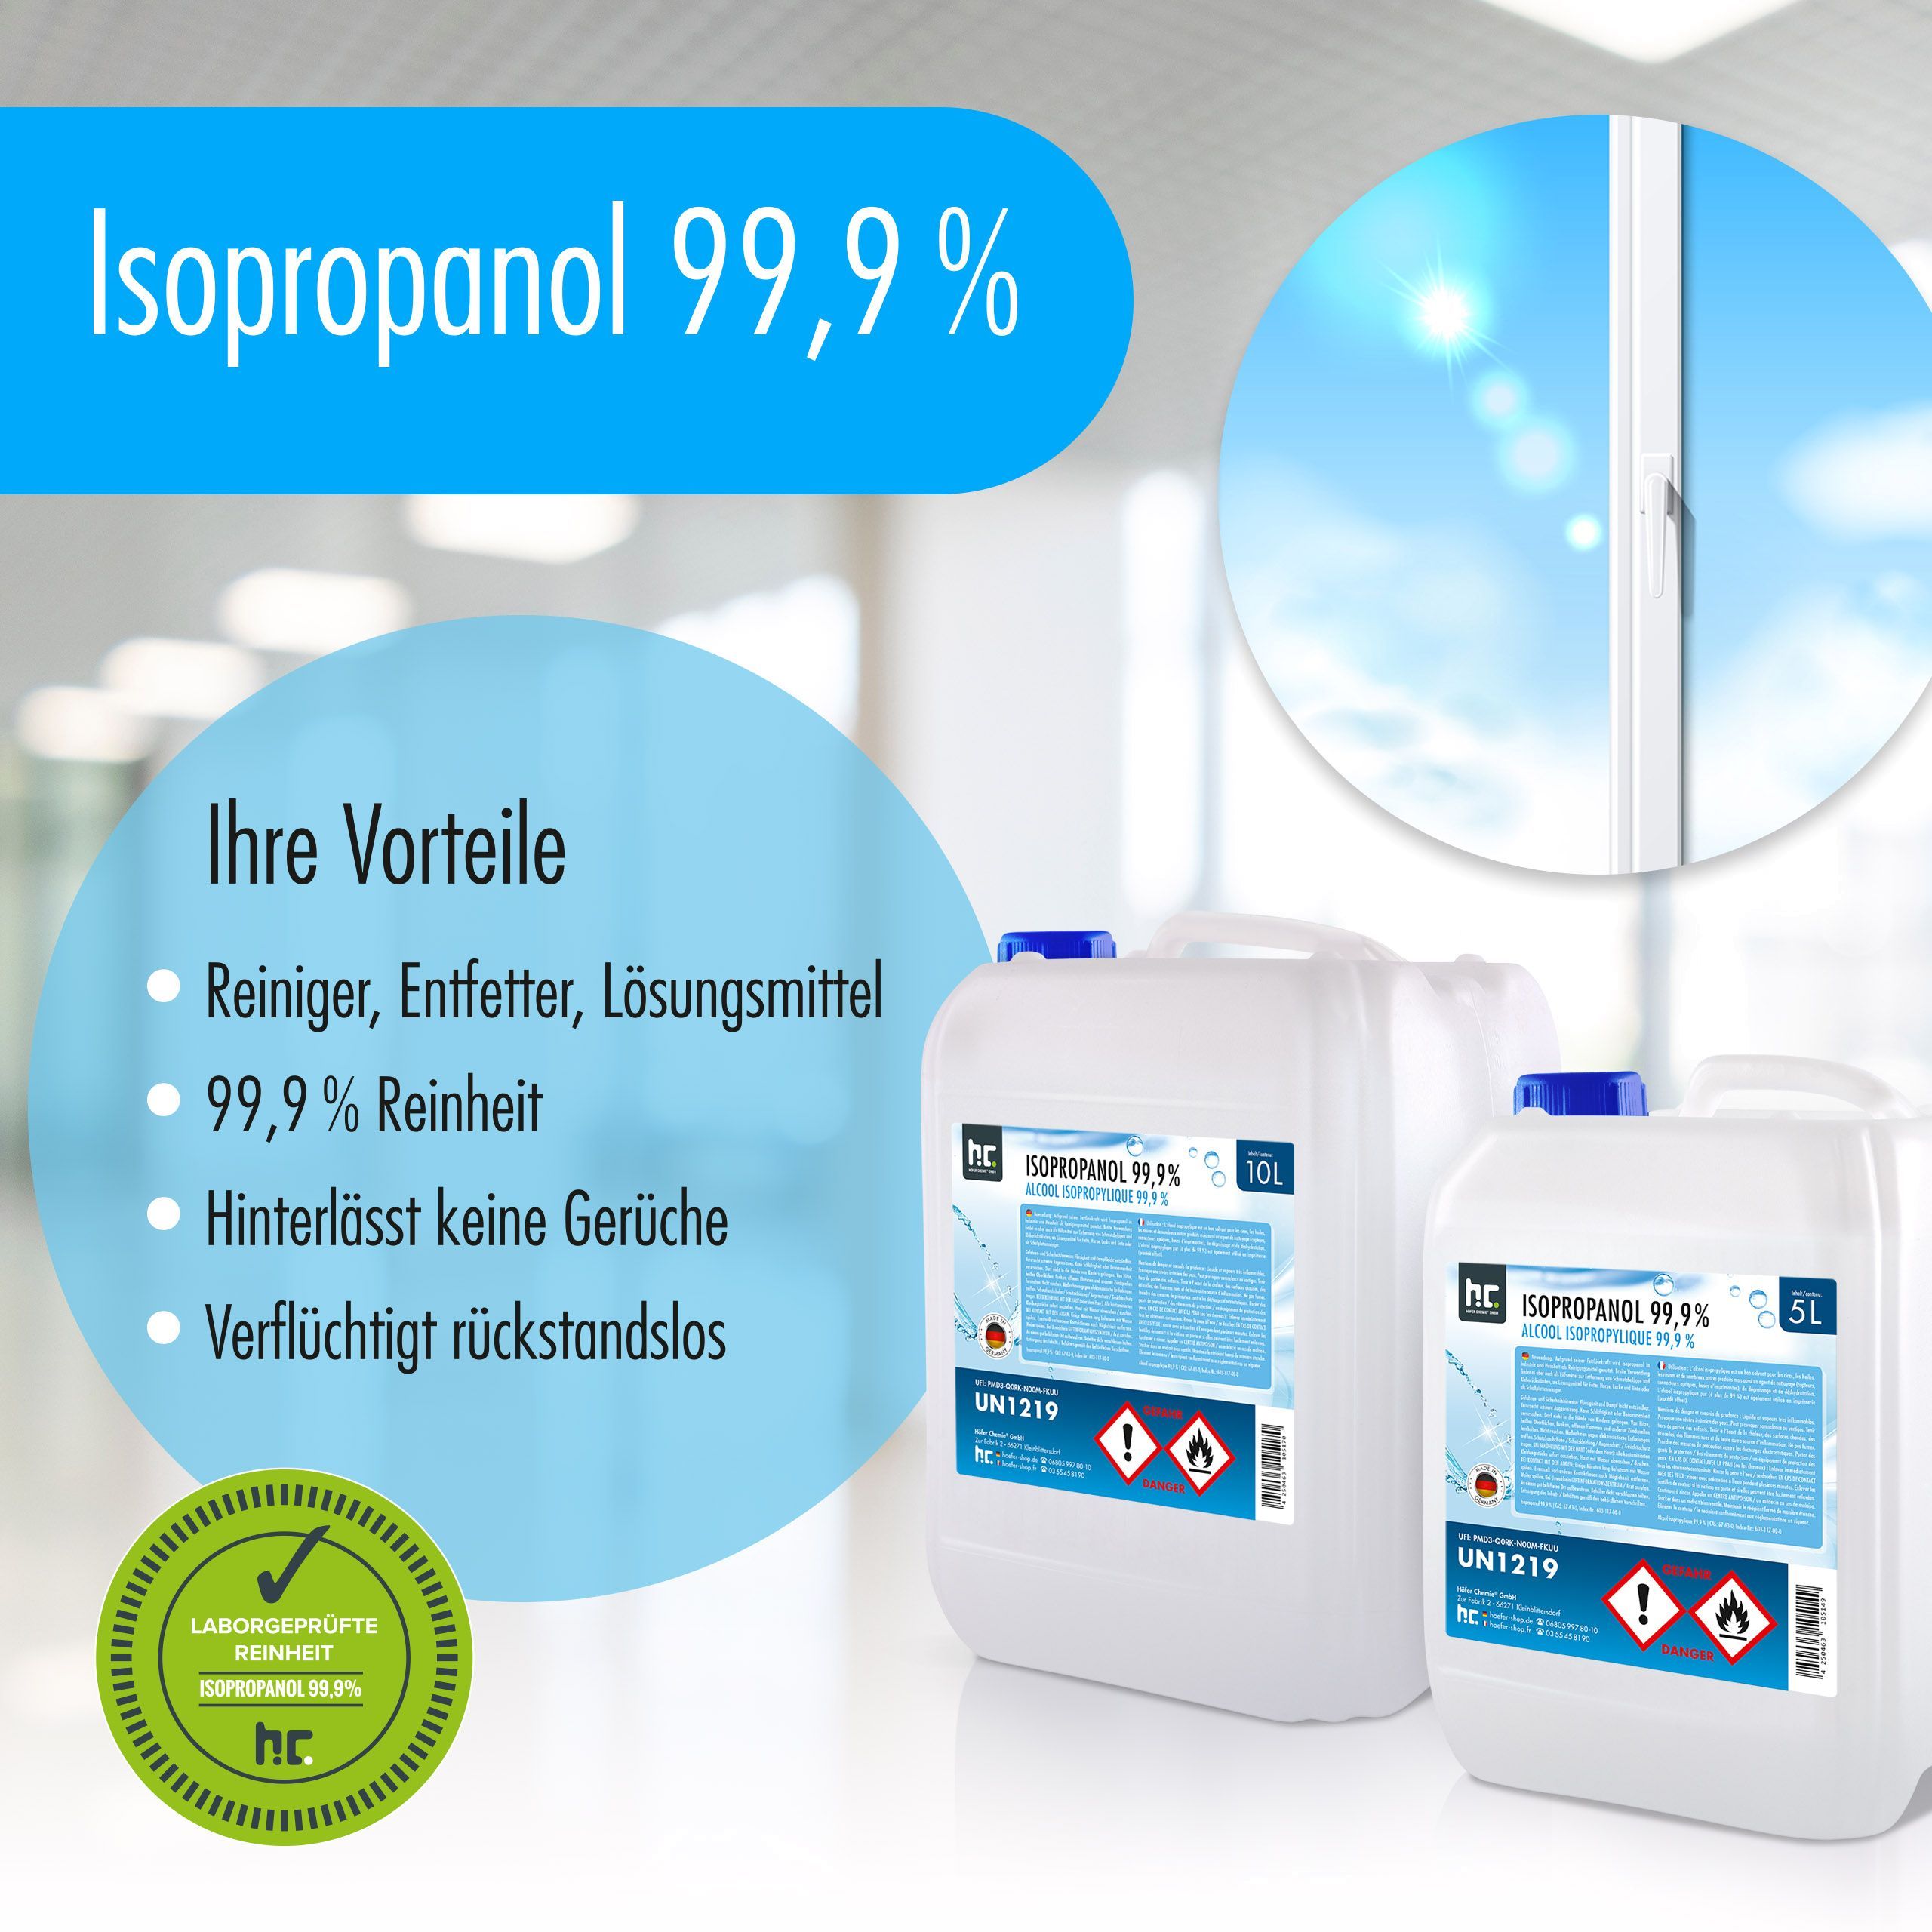 1 L Isopropanol 99,9% in 1 Liter Flaschen